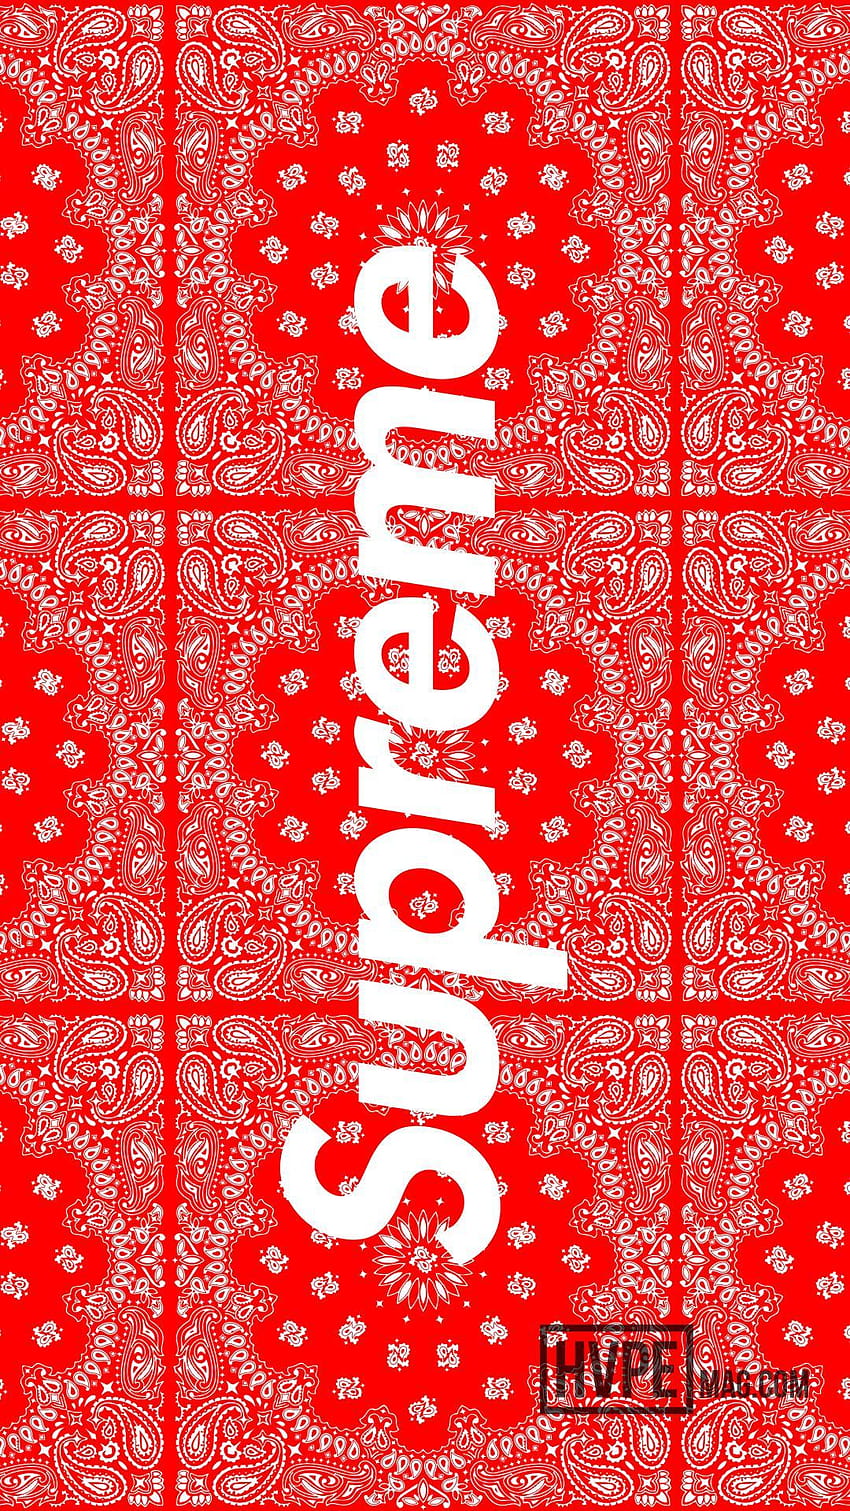 Gucci, Cool Supreme Gucci HD phone wallpaper